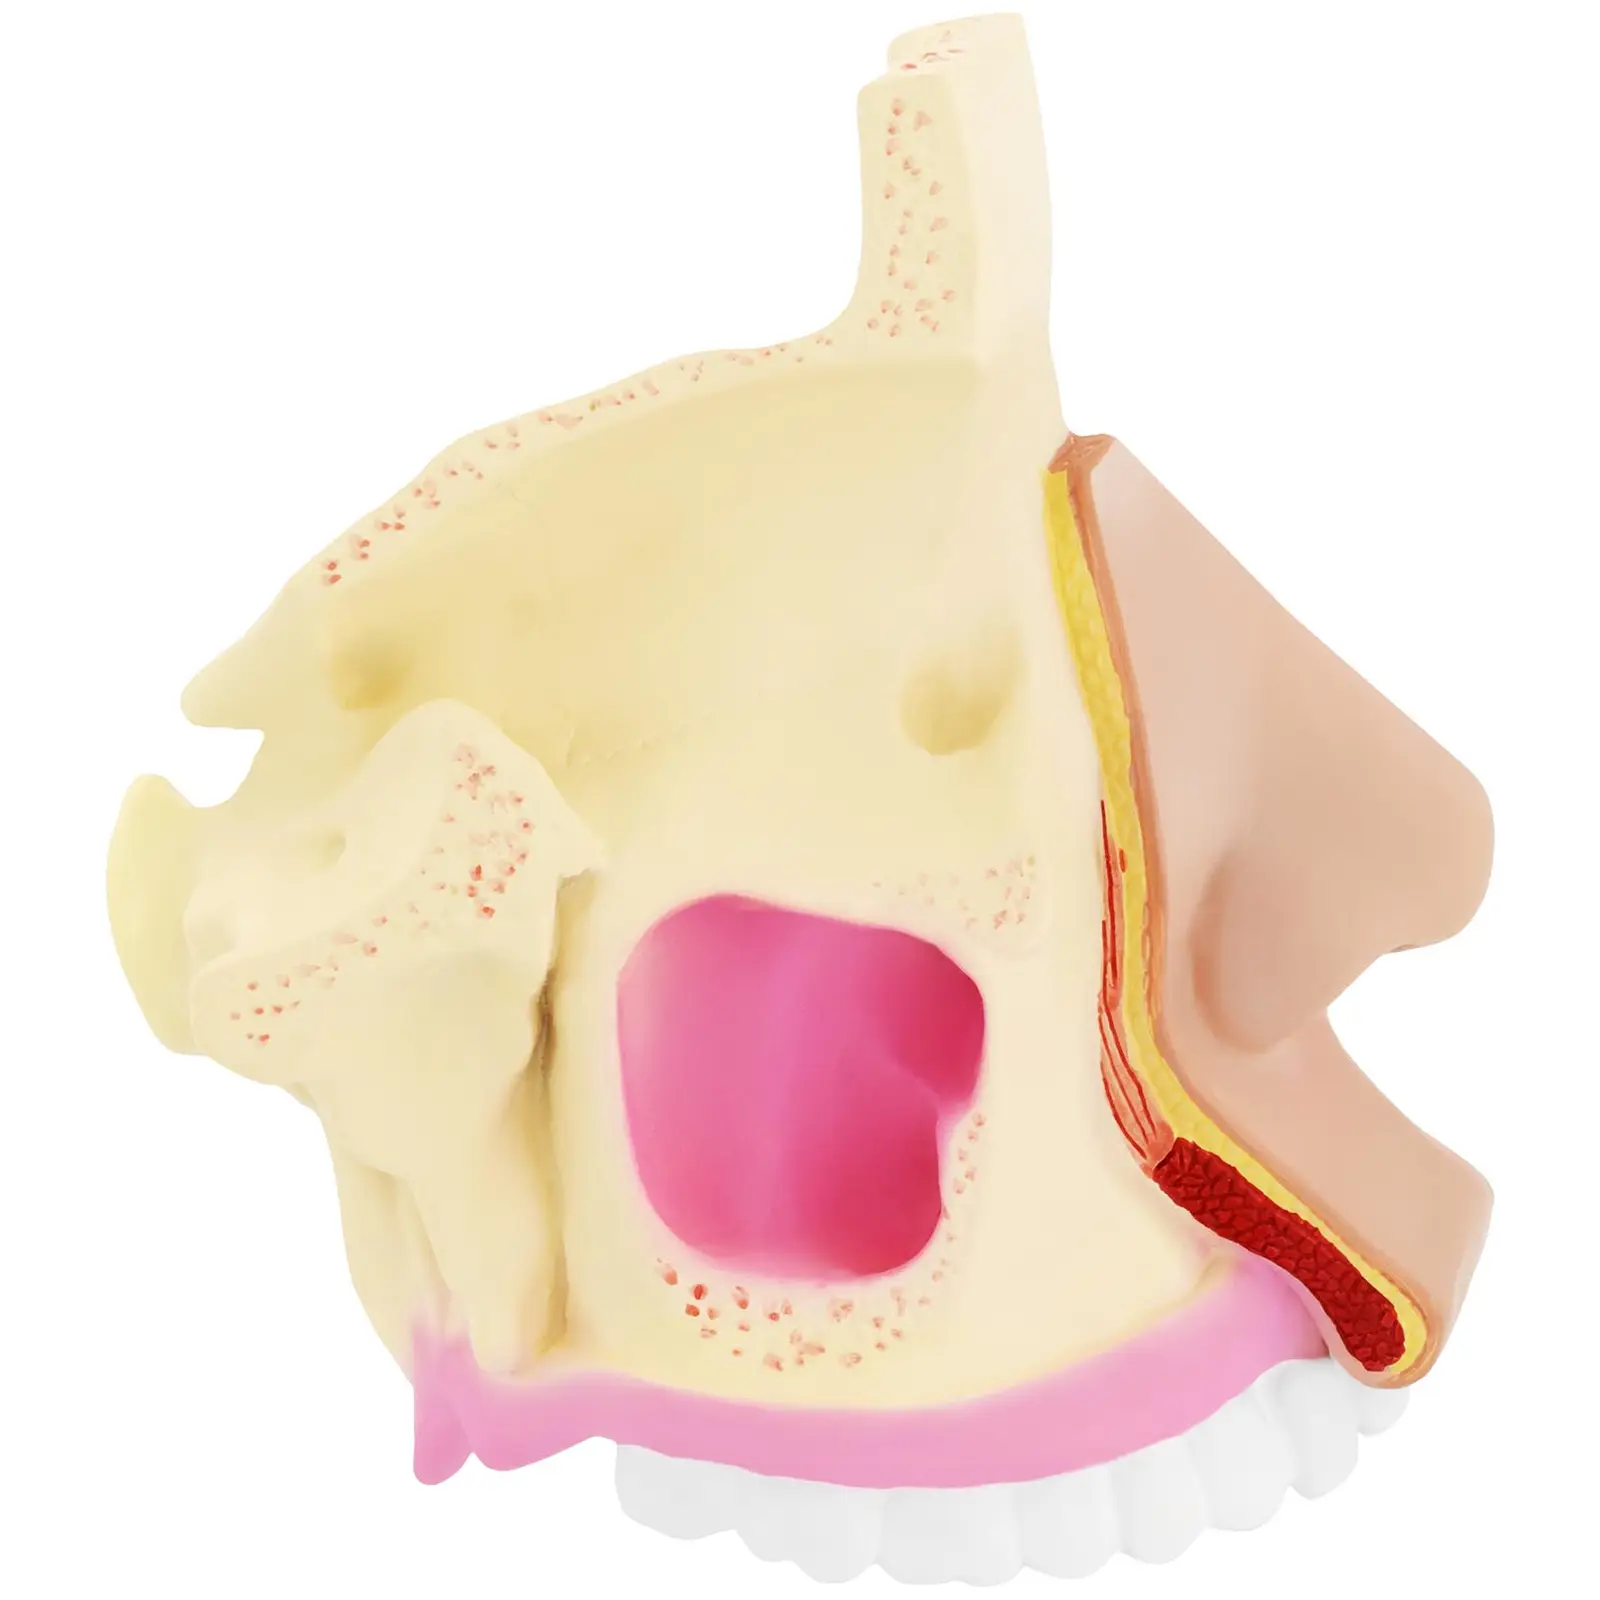 Jama nosowa - model anatomiczny